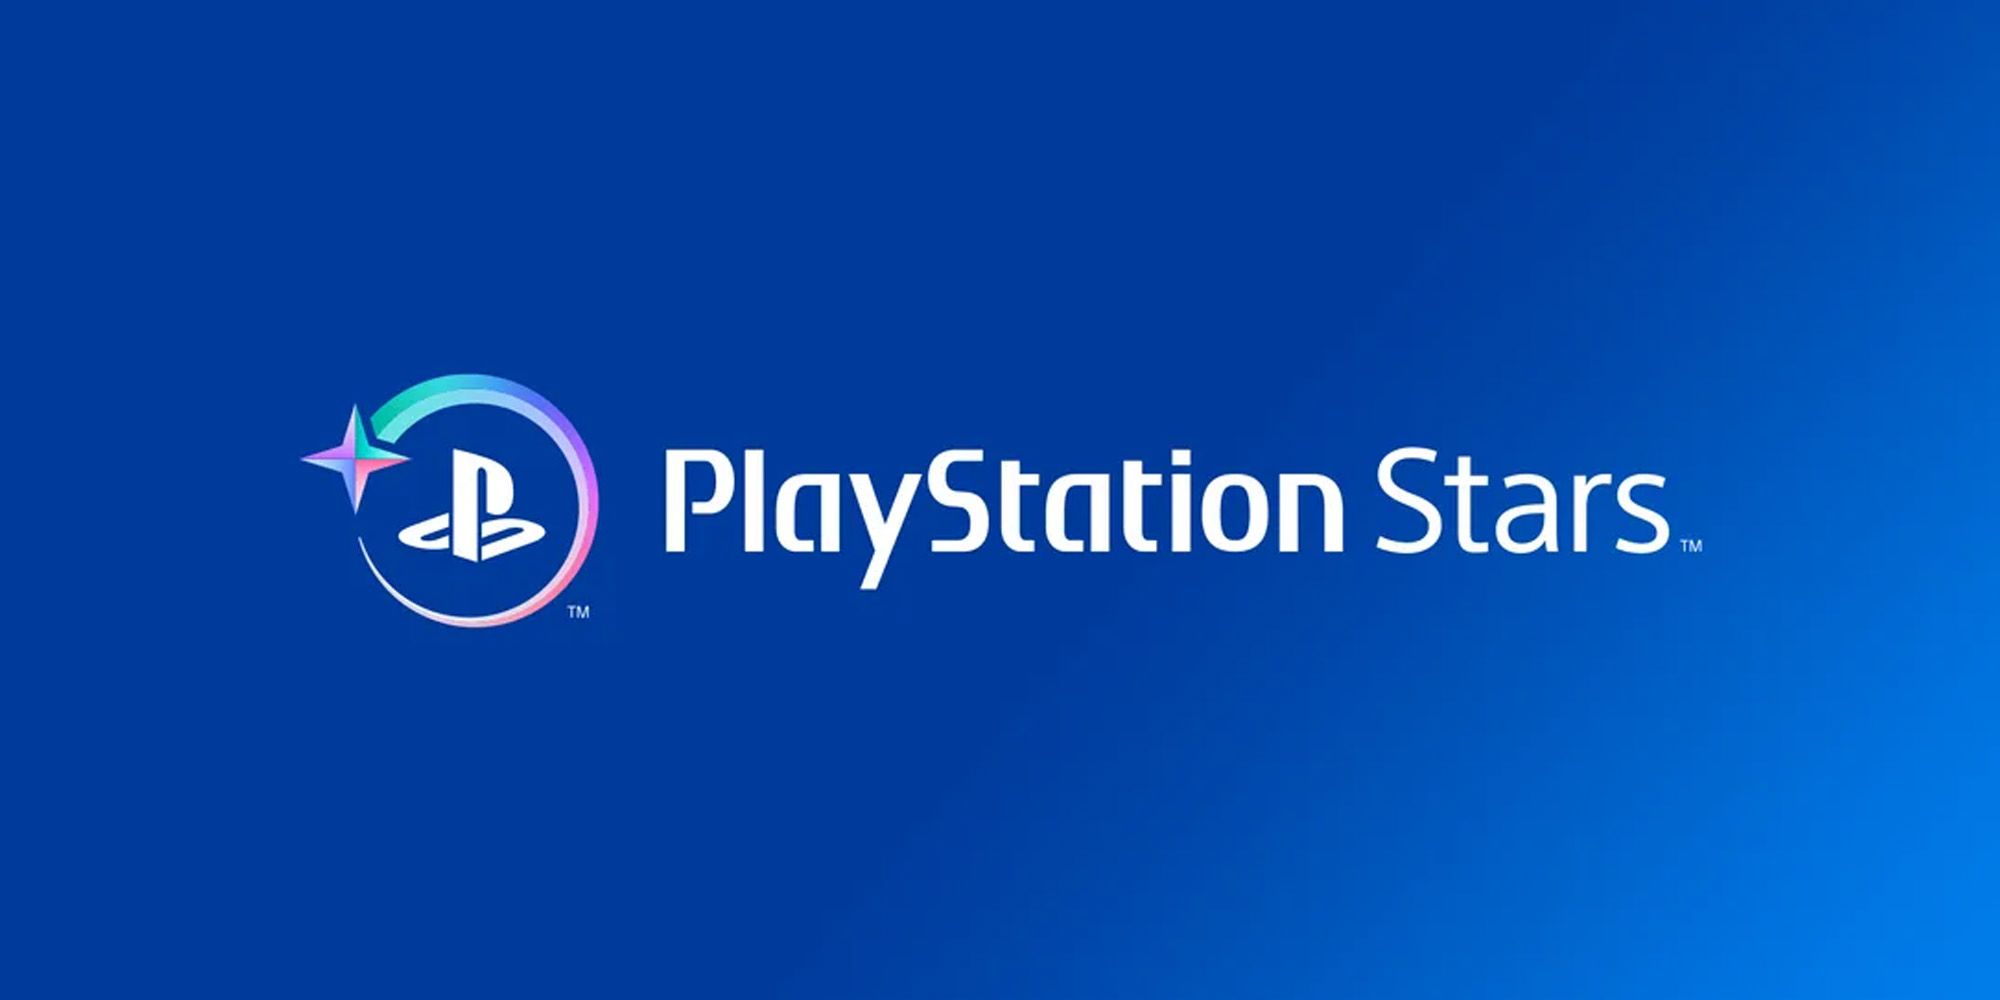 Cómo registrarse para PlayStation Stars (precios, puntos y recompensas)